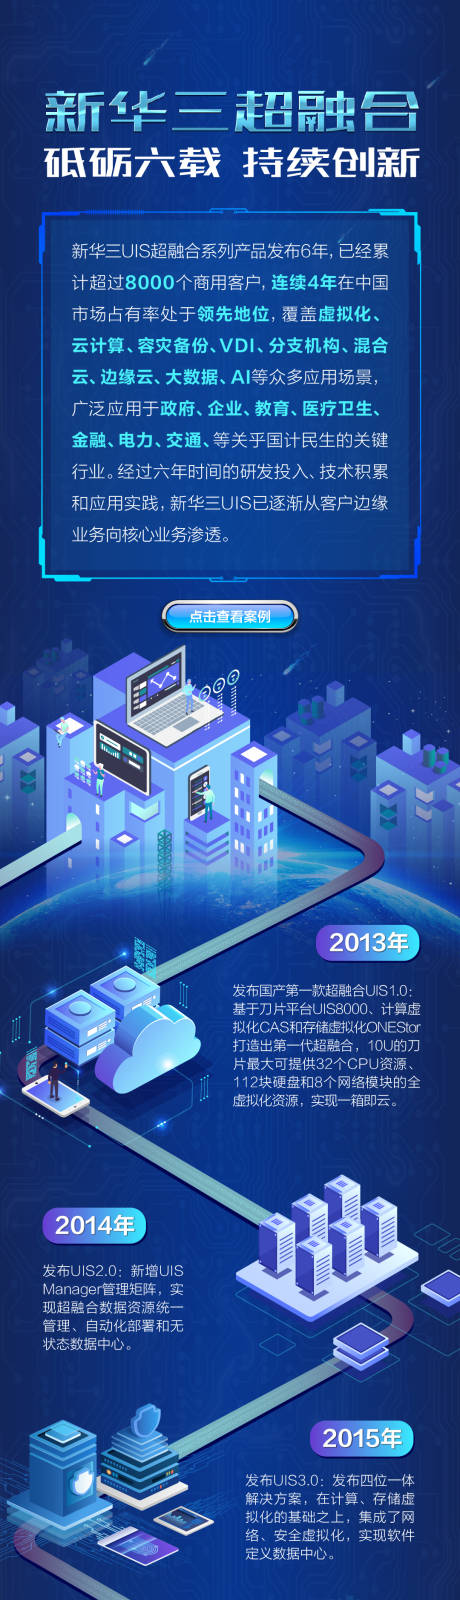 云计算科技2.5D海报